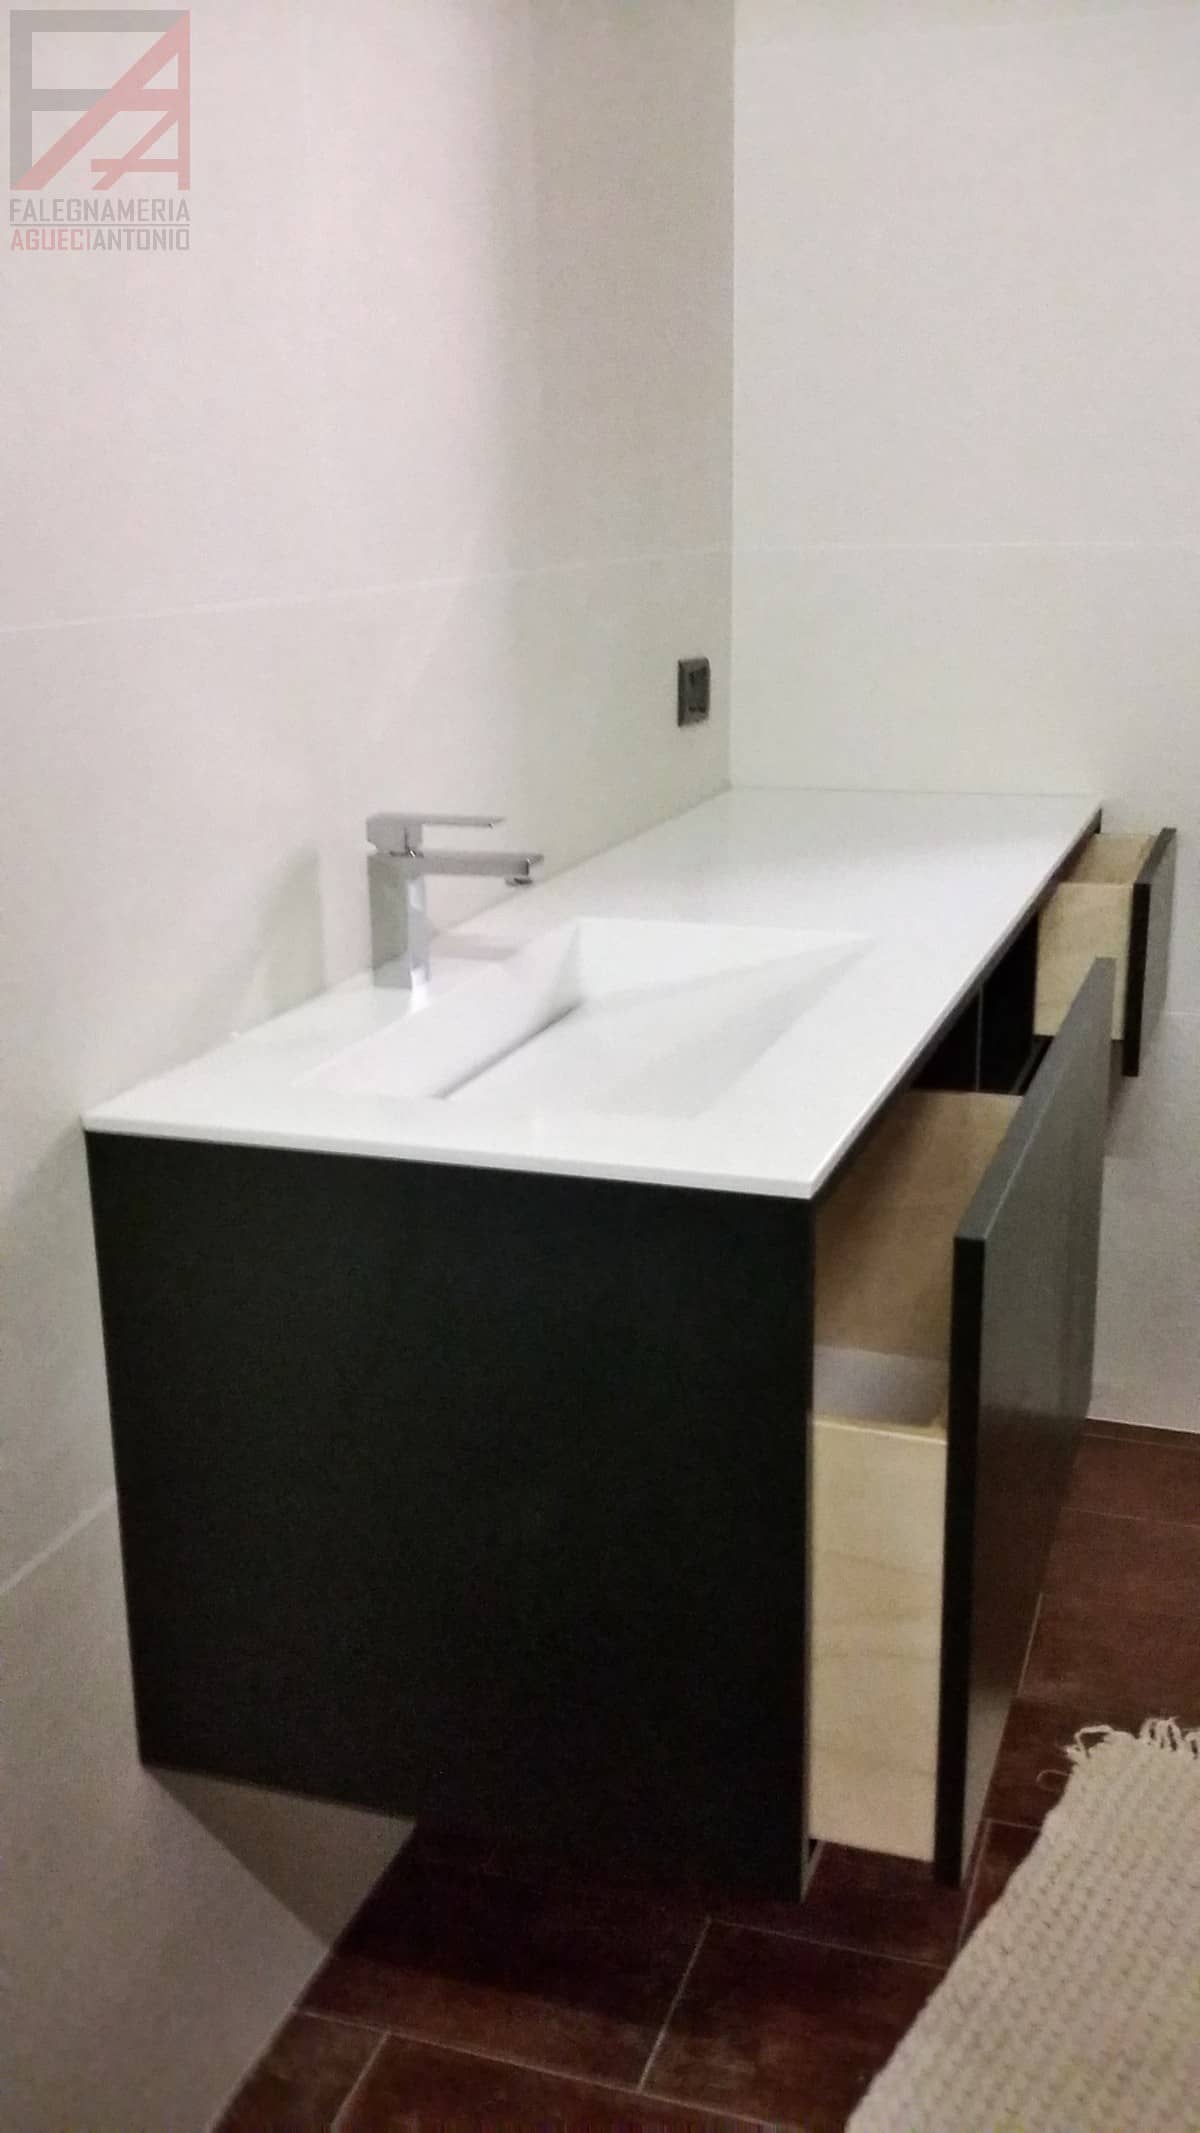 Falegnameria Agueci Antonio - Mobile bagno con base in corian e lavabo integrato